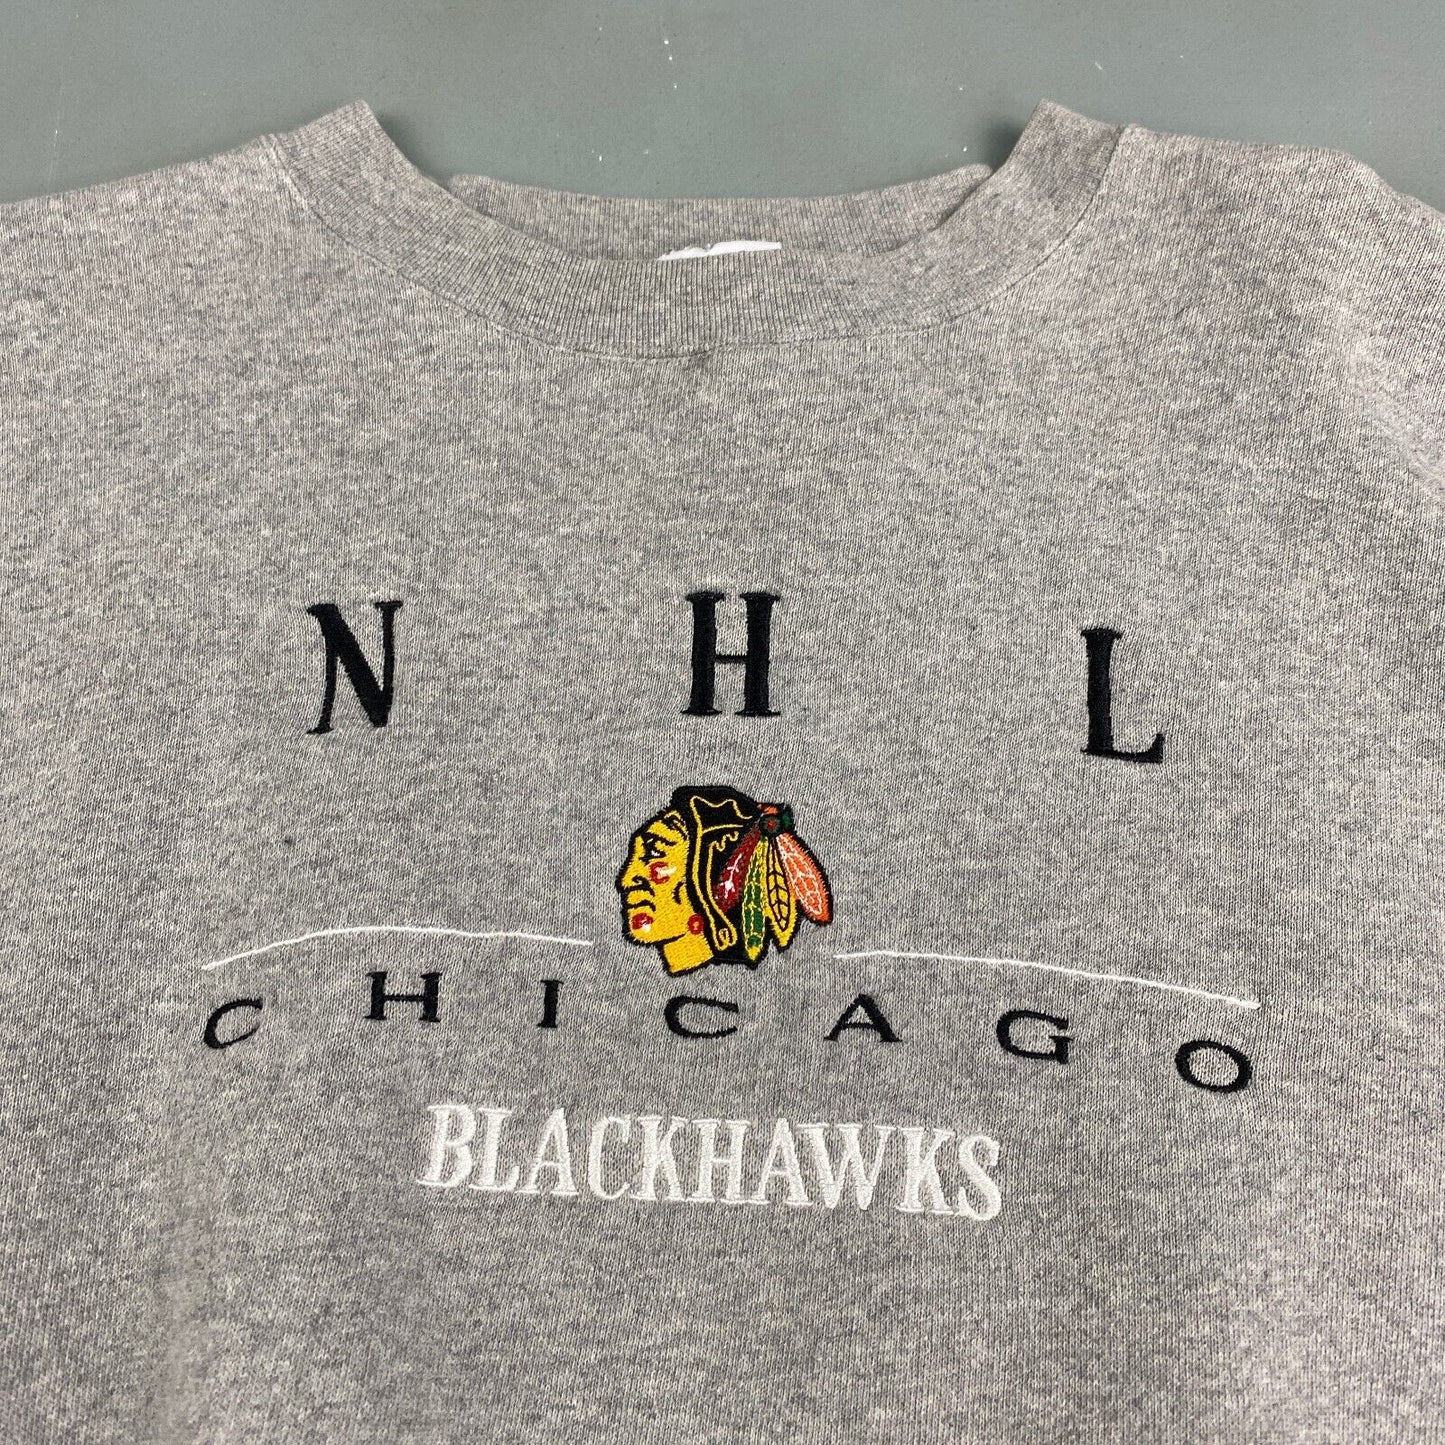 VINTAGE 90s NHL Chicago Blackhawks Embroidered Crewneck Sweater sz L Adult Men